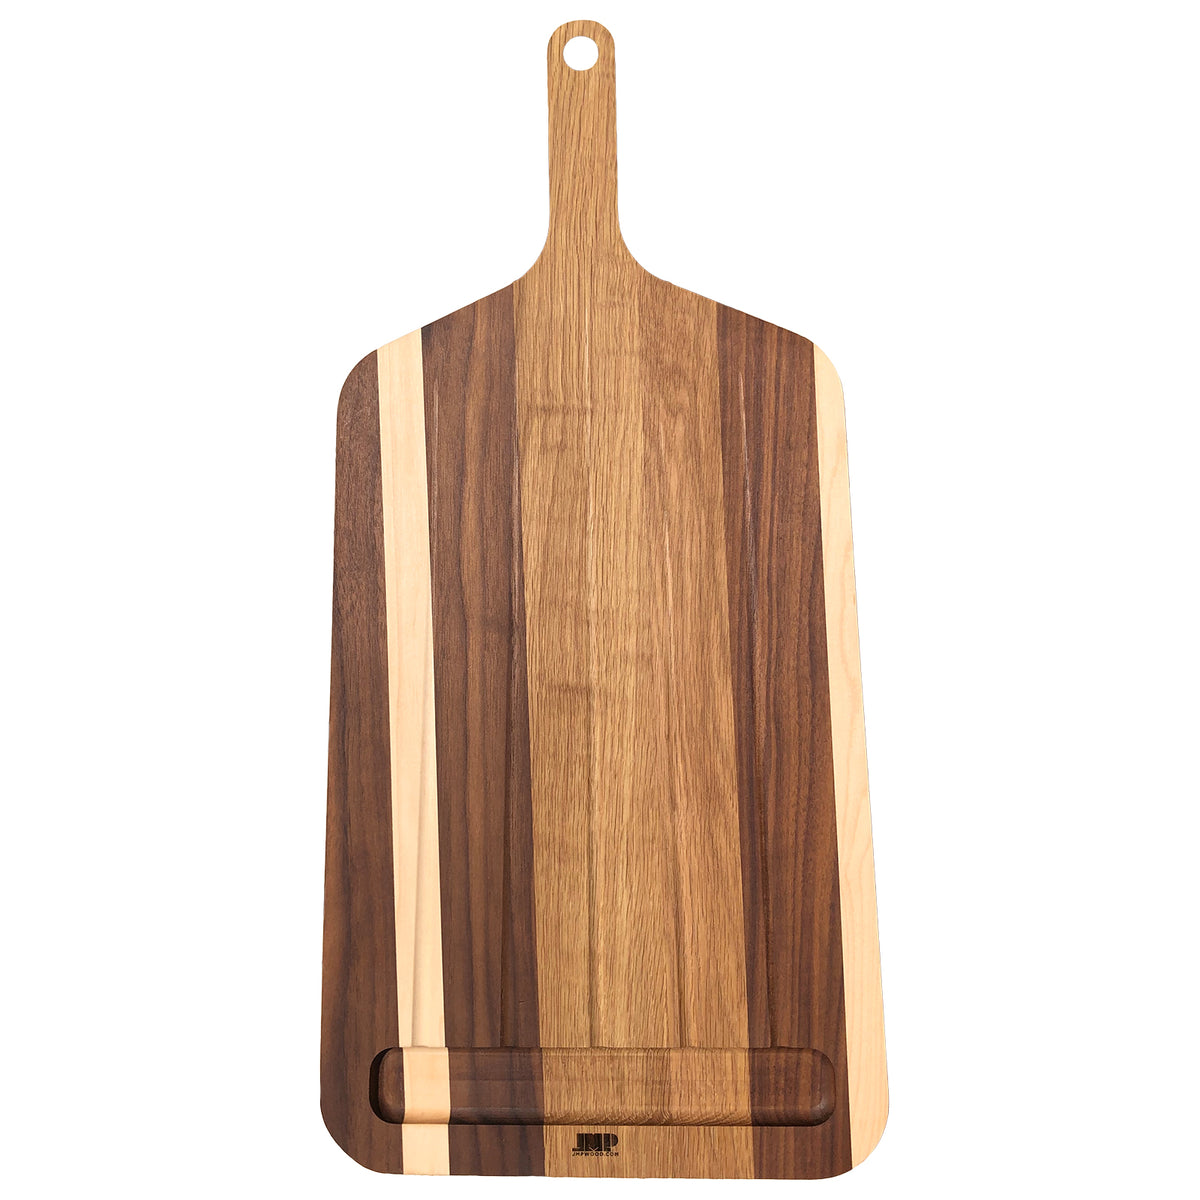 Cutting boards. Wooden cutting boards. Wooden crafts 22903375